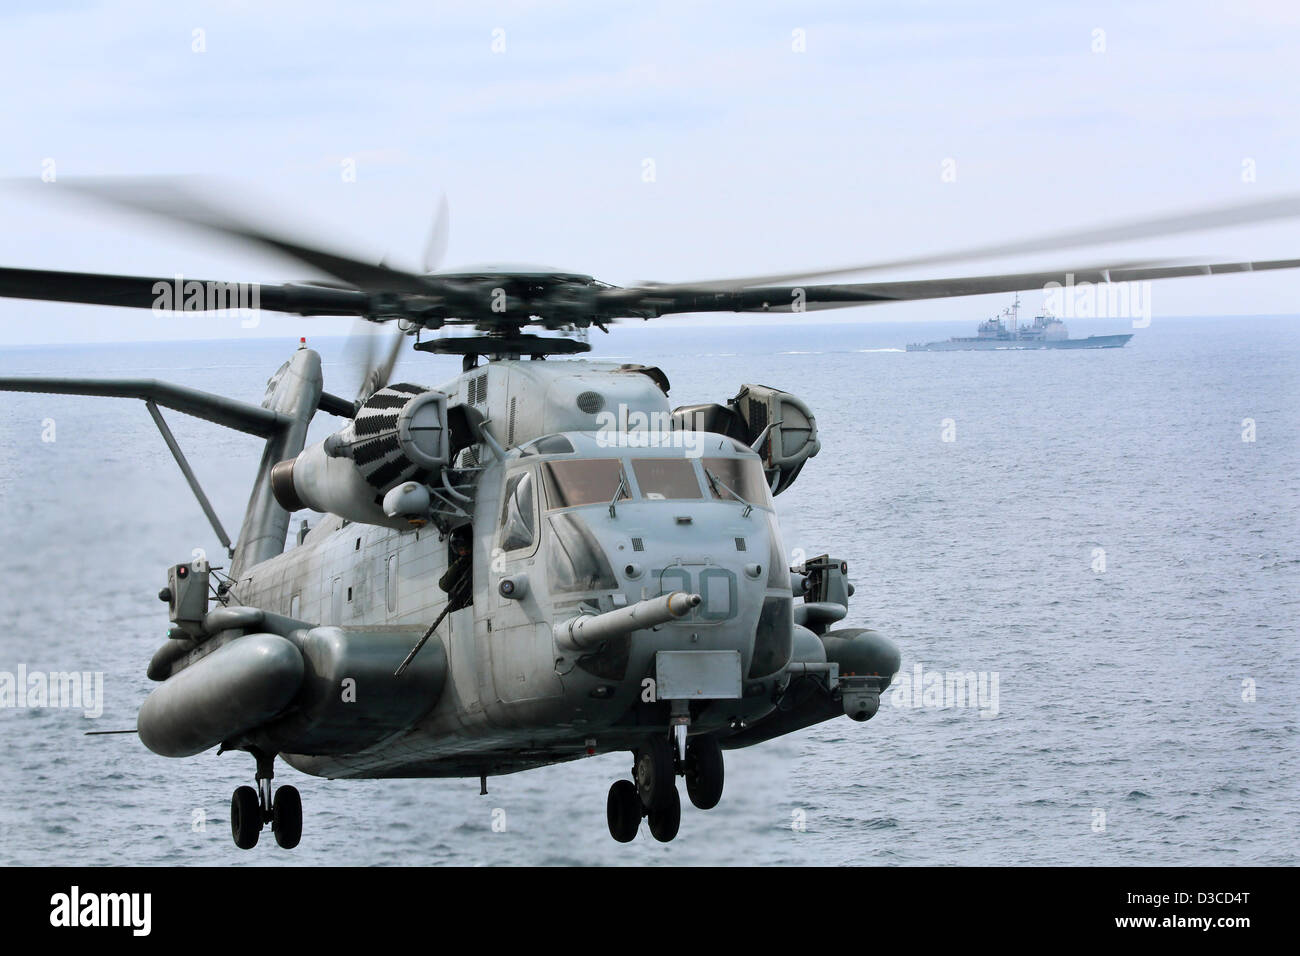 Marine estadounidense del tipo CH-53E Super Stallion realiza operaciones de vuelo de helicóptero cerca del crucero de misiles guiados USS Anzio y el buque de asalto anfibio USS Kearsarge, 14 de febrero de 2013 en el Océano Atlántico. Los buques que participan en un programa conjunto de capacitación con los marineros del Reino Unido. Foto de stock